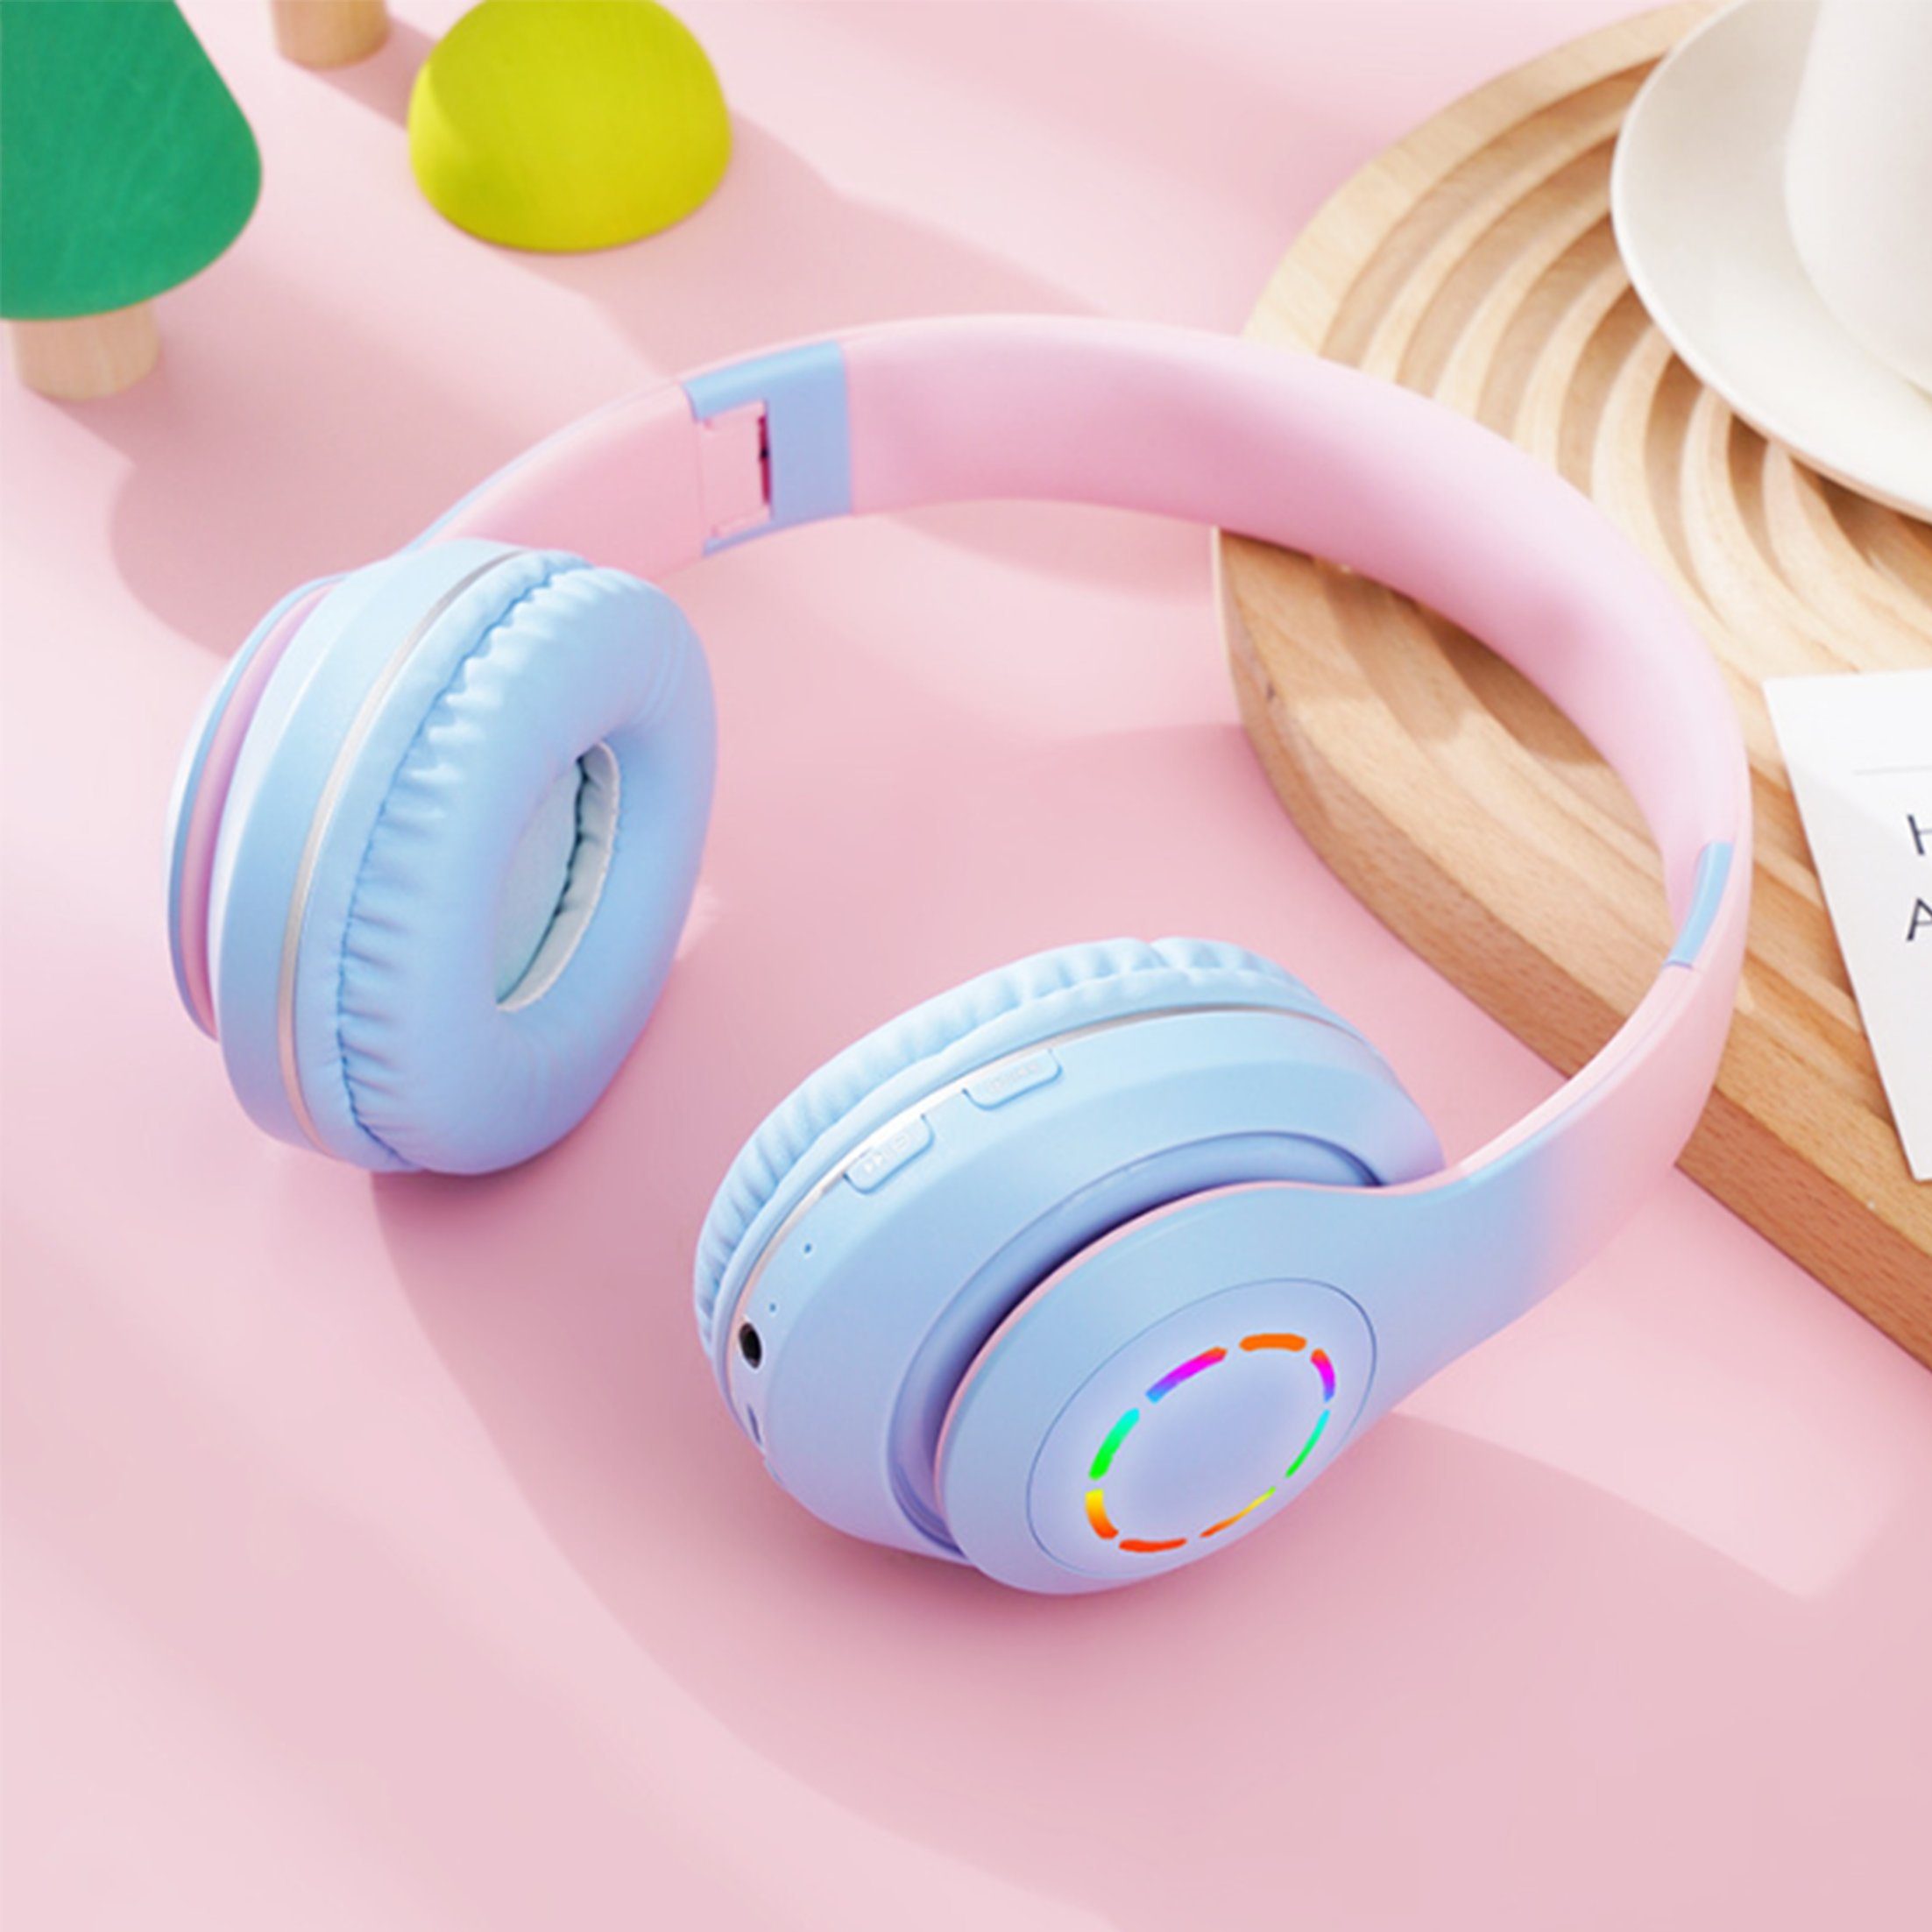 Diida Kopfhörer,Bluetooth-Kopfhörer,Over Ear Kabelloses Headset Funk-Kopfhörer Farbverlauf Blau